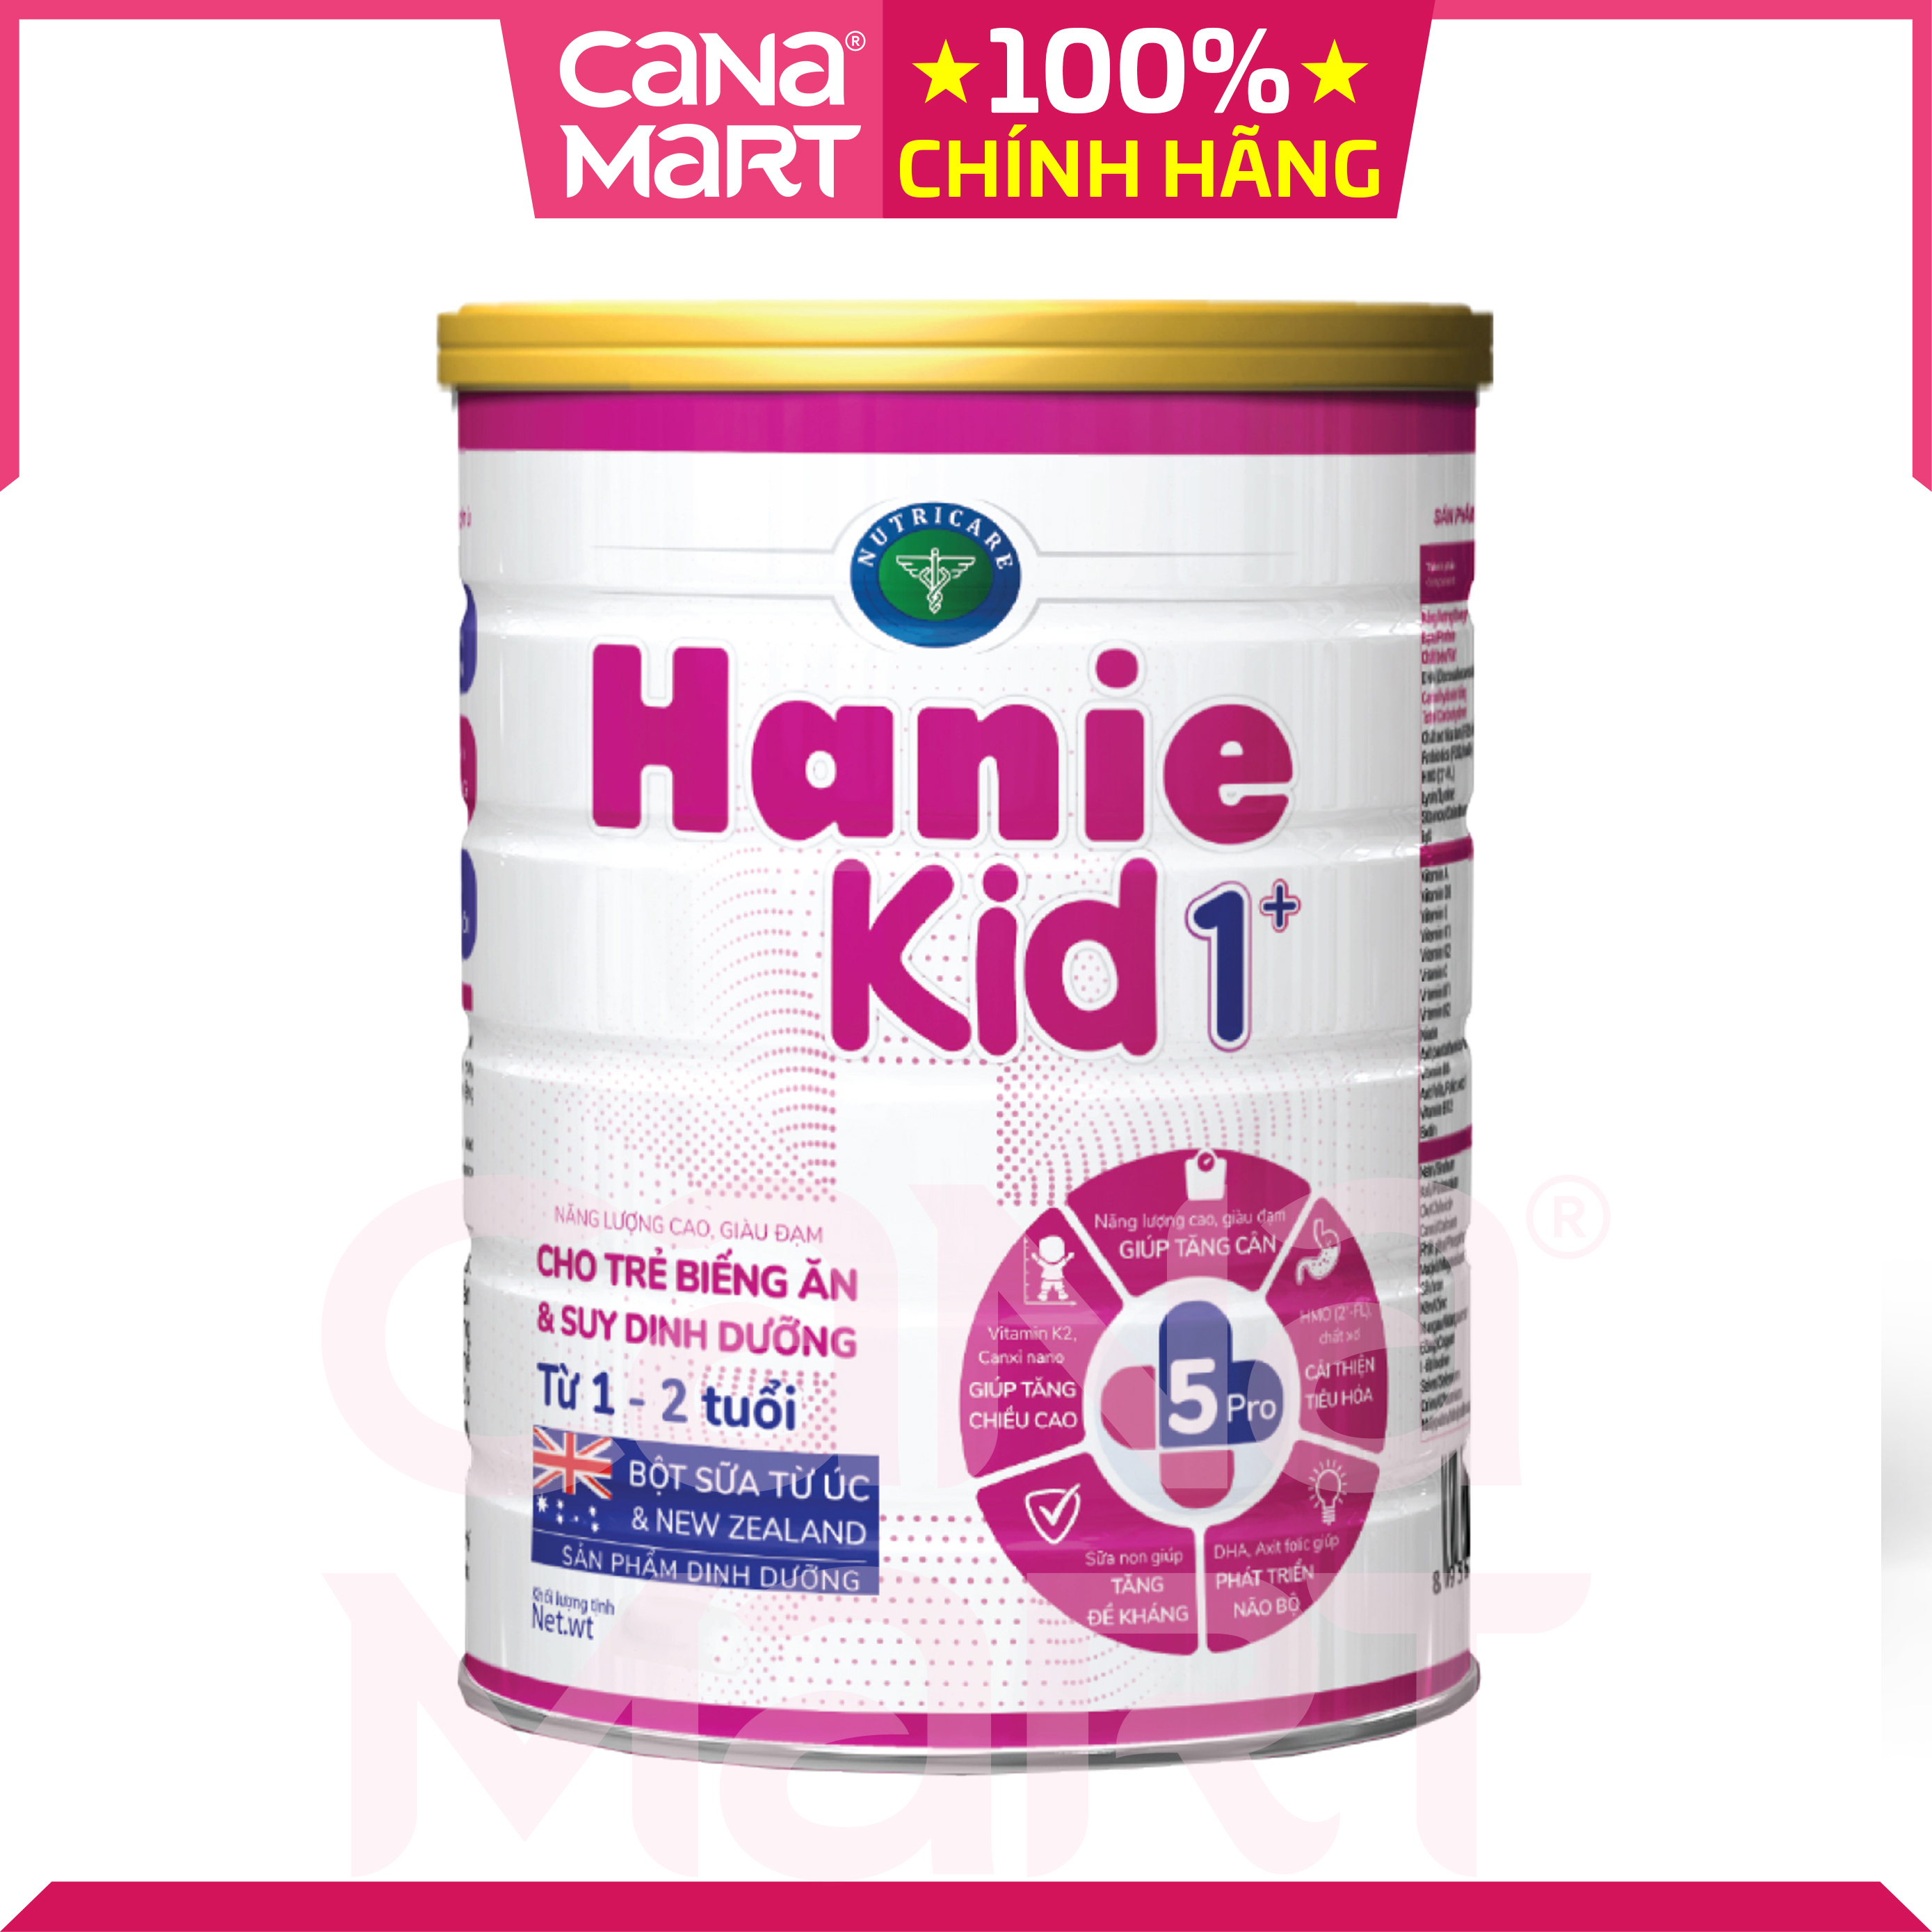 Sữa bột tốt cho bé Nutricare Hanie Kid 1+, dinh dưỡng cho trẻ biếng ăn, suy dinh dưỡng (400g)